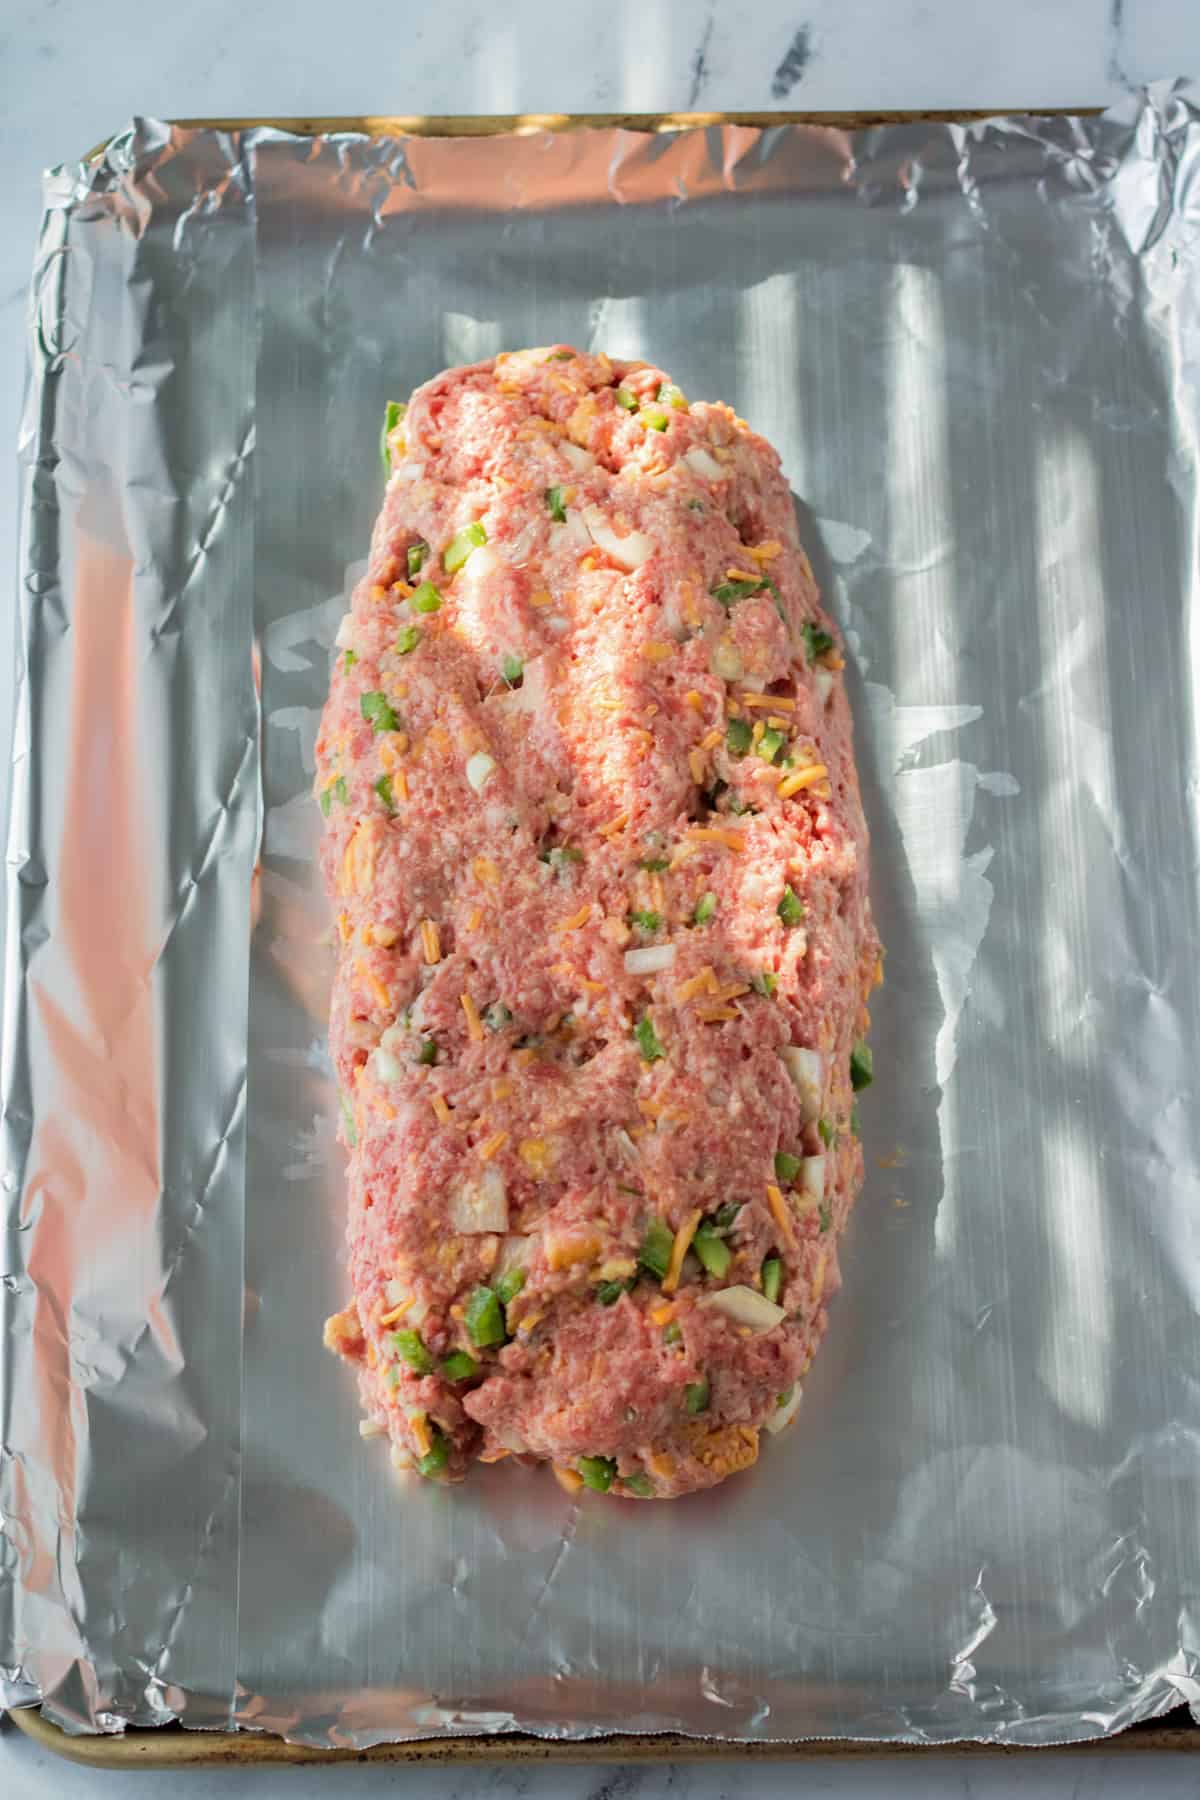 Copycat cracker barrel meatloaf formed into loaf-shape on foil lined pan.